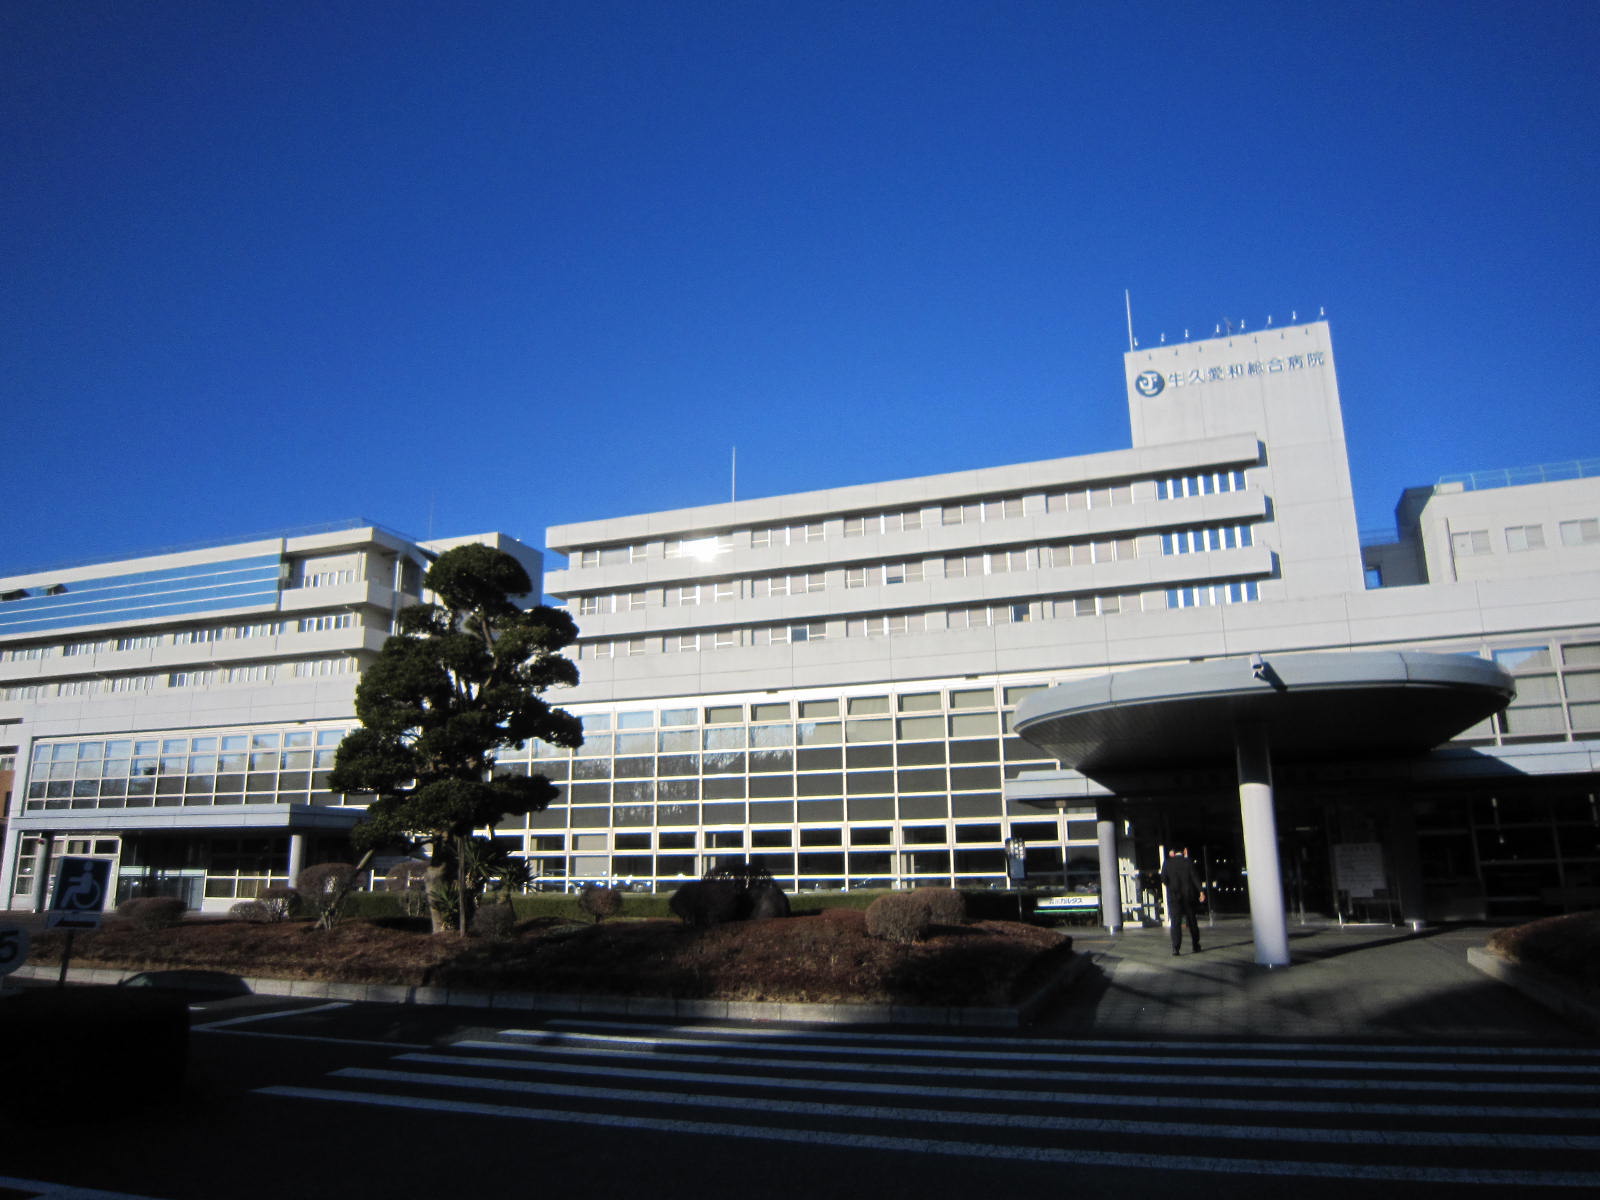 Hospital. Ushikuaiwasogobyoin until the (hospital) 1970m